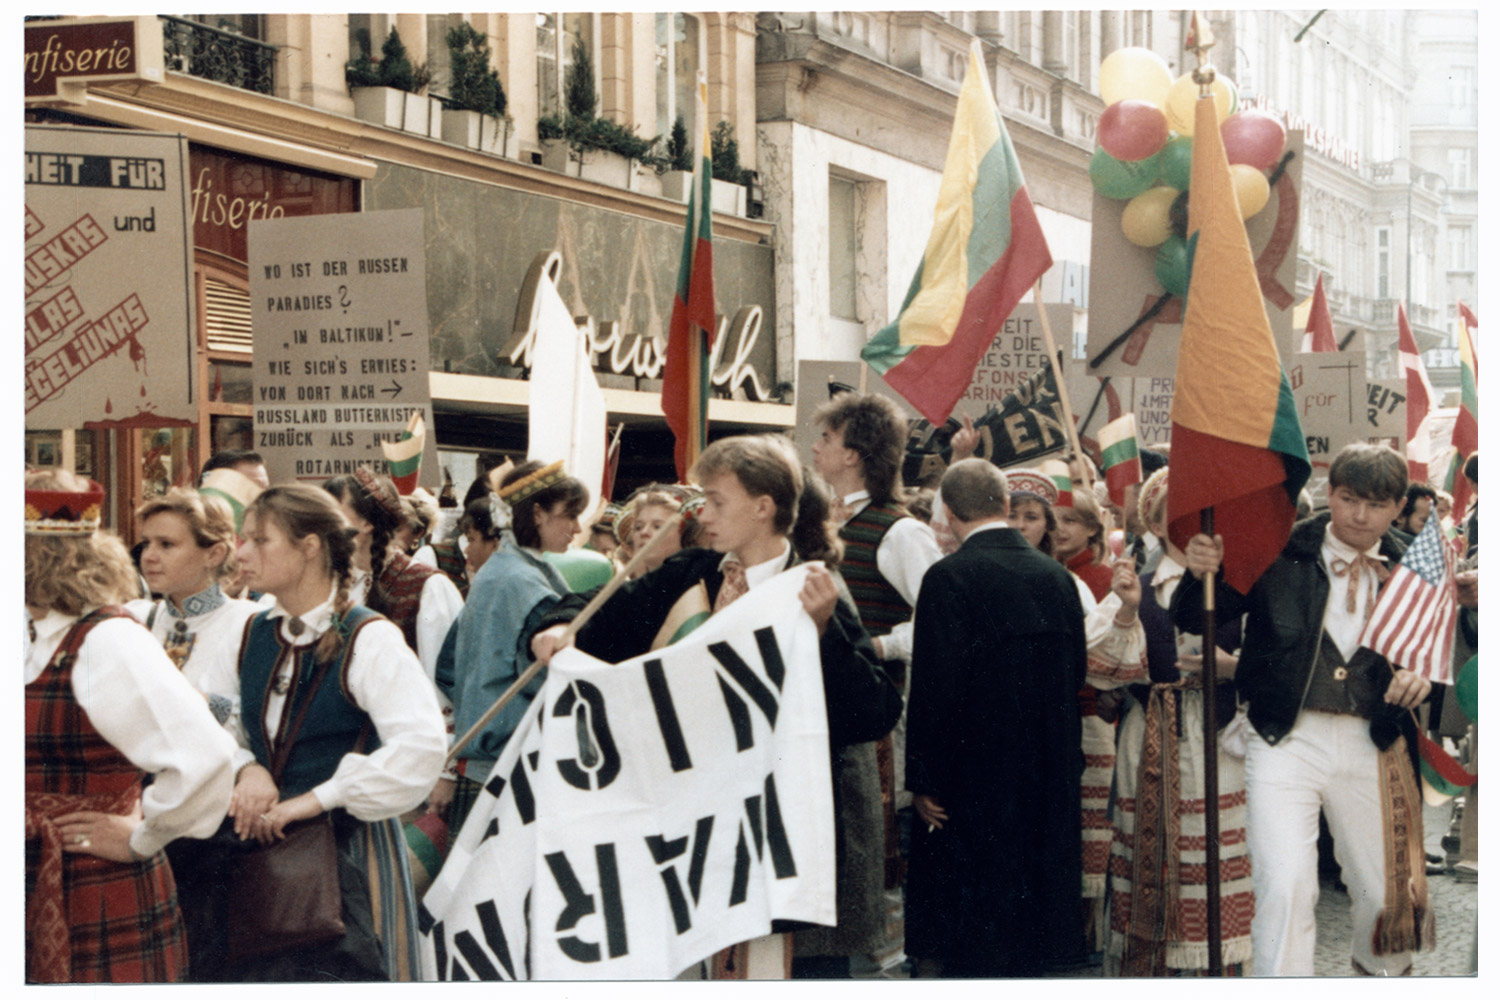 1986 m. Viena, Austrija. Lietuvių, latvių, estų politemigrantų demonstracija už Baltijos valstybių laisvę Vienoje vykstant ESBO konferencijai. LCVA